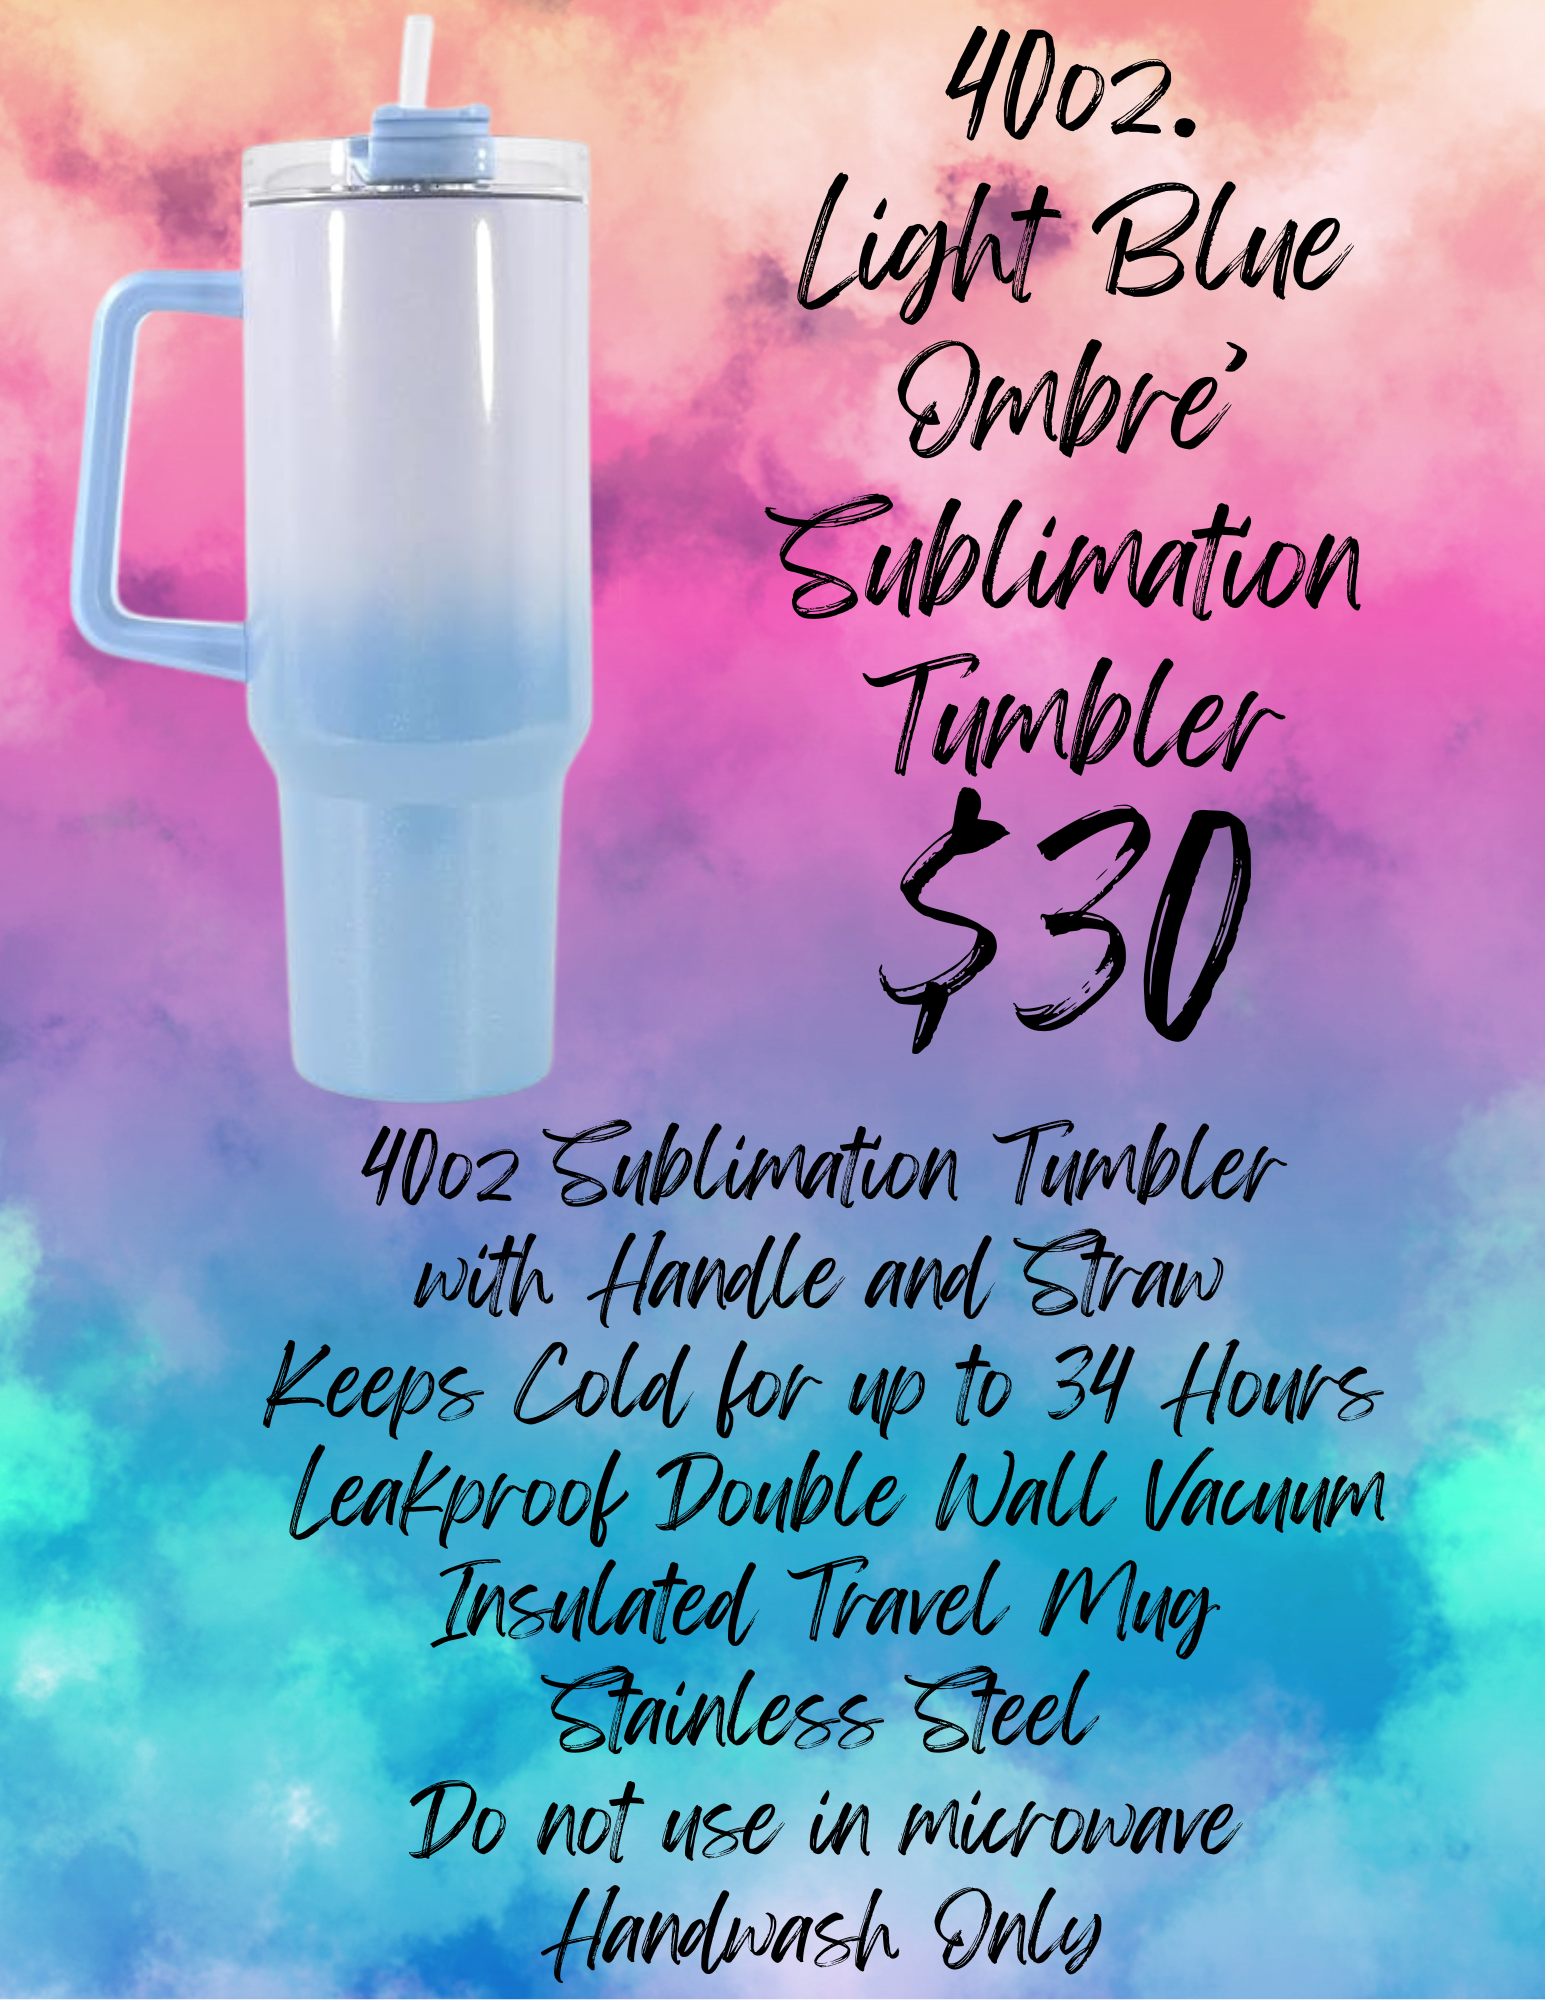 40oz Light Blue Ombre' Tumbler (Sublimation)